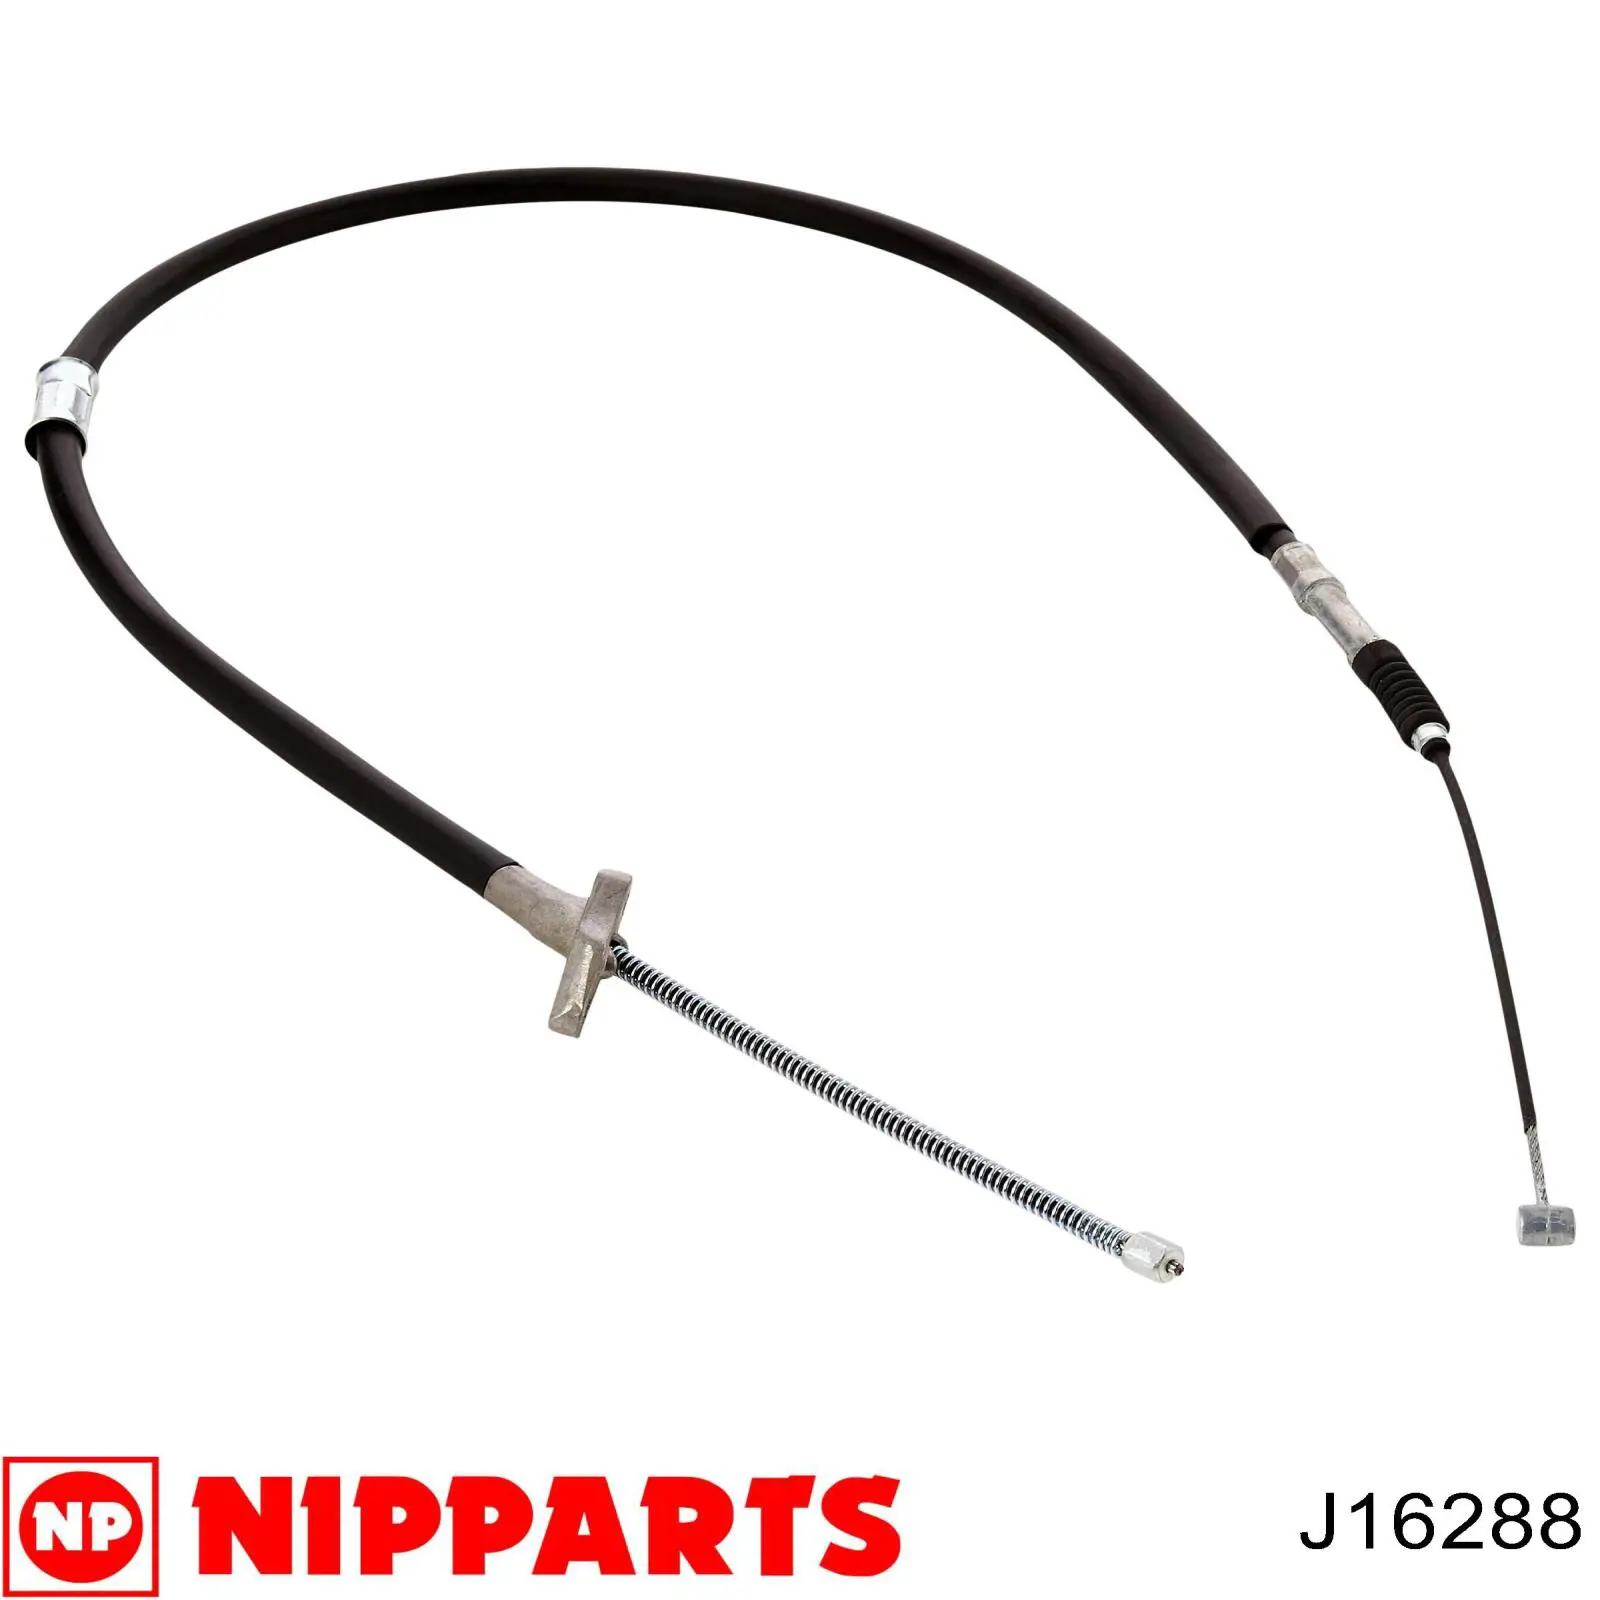 Cable de freno de mano trasero derecho J16288 Nipparts